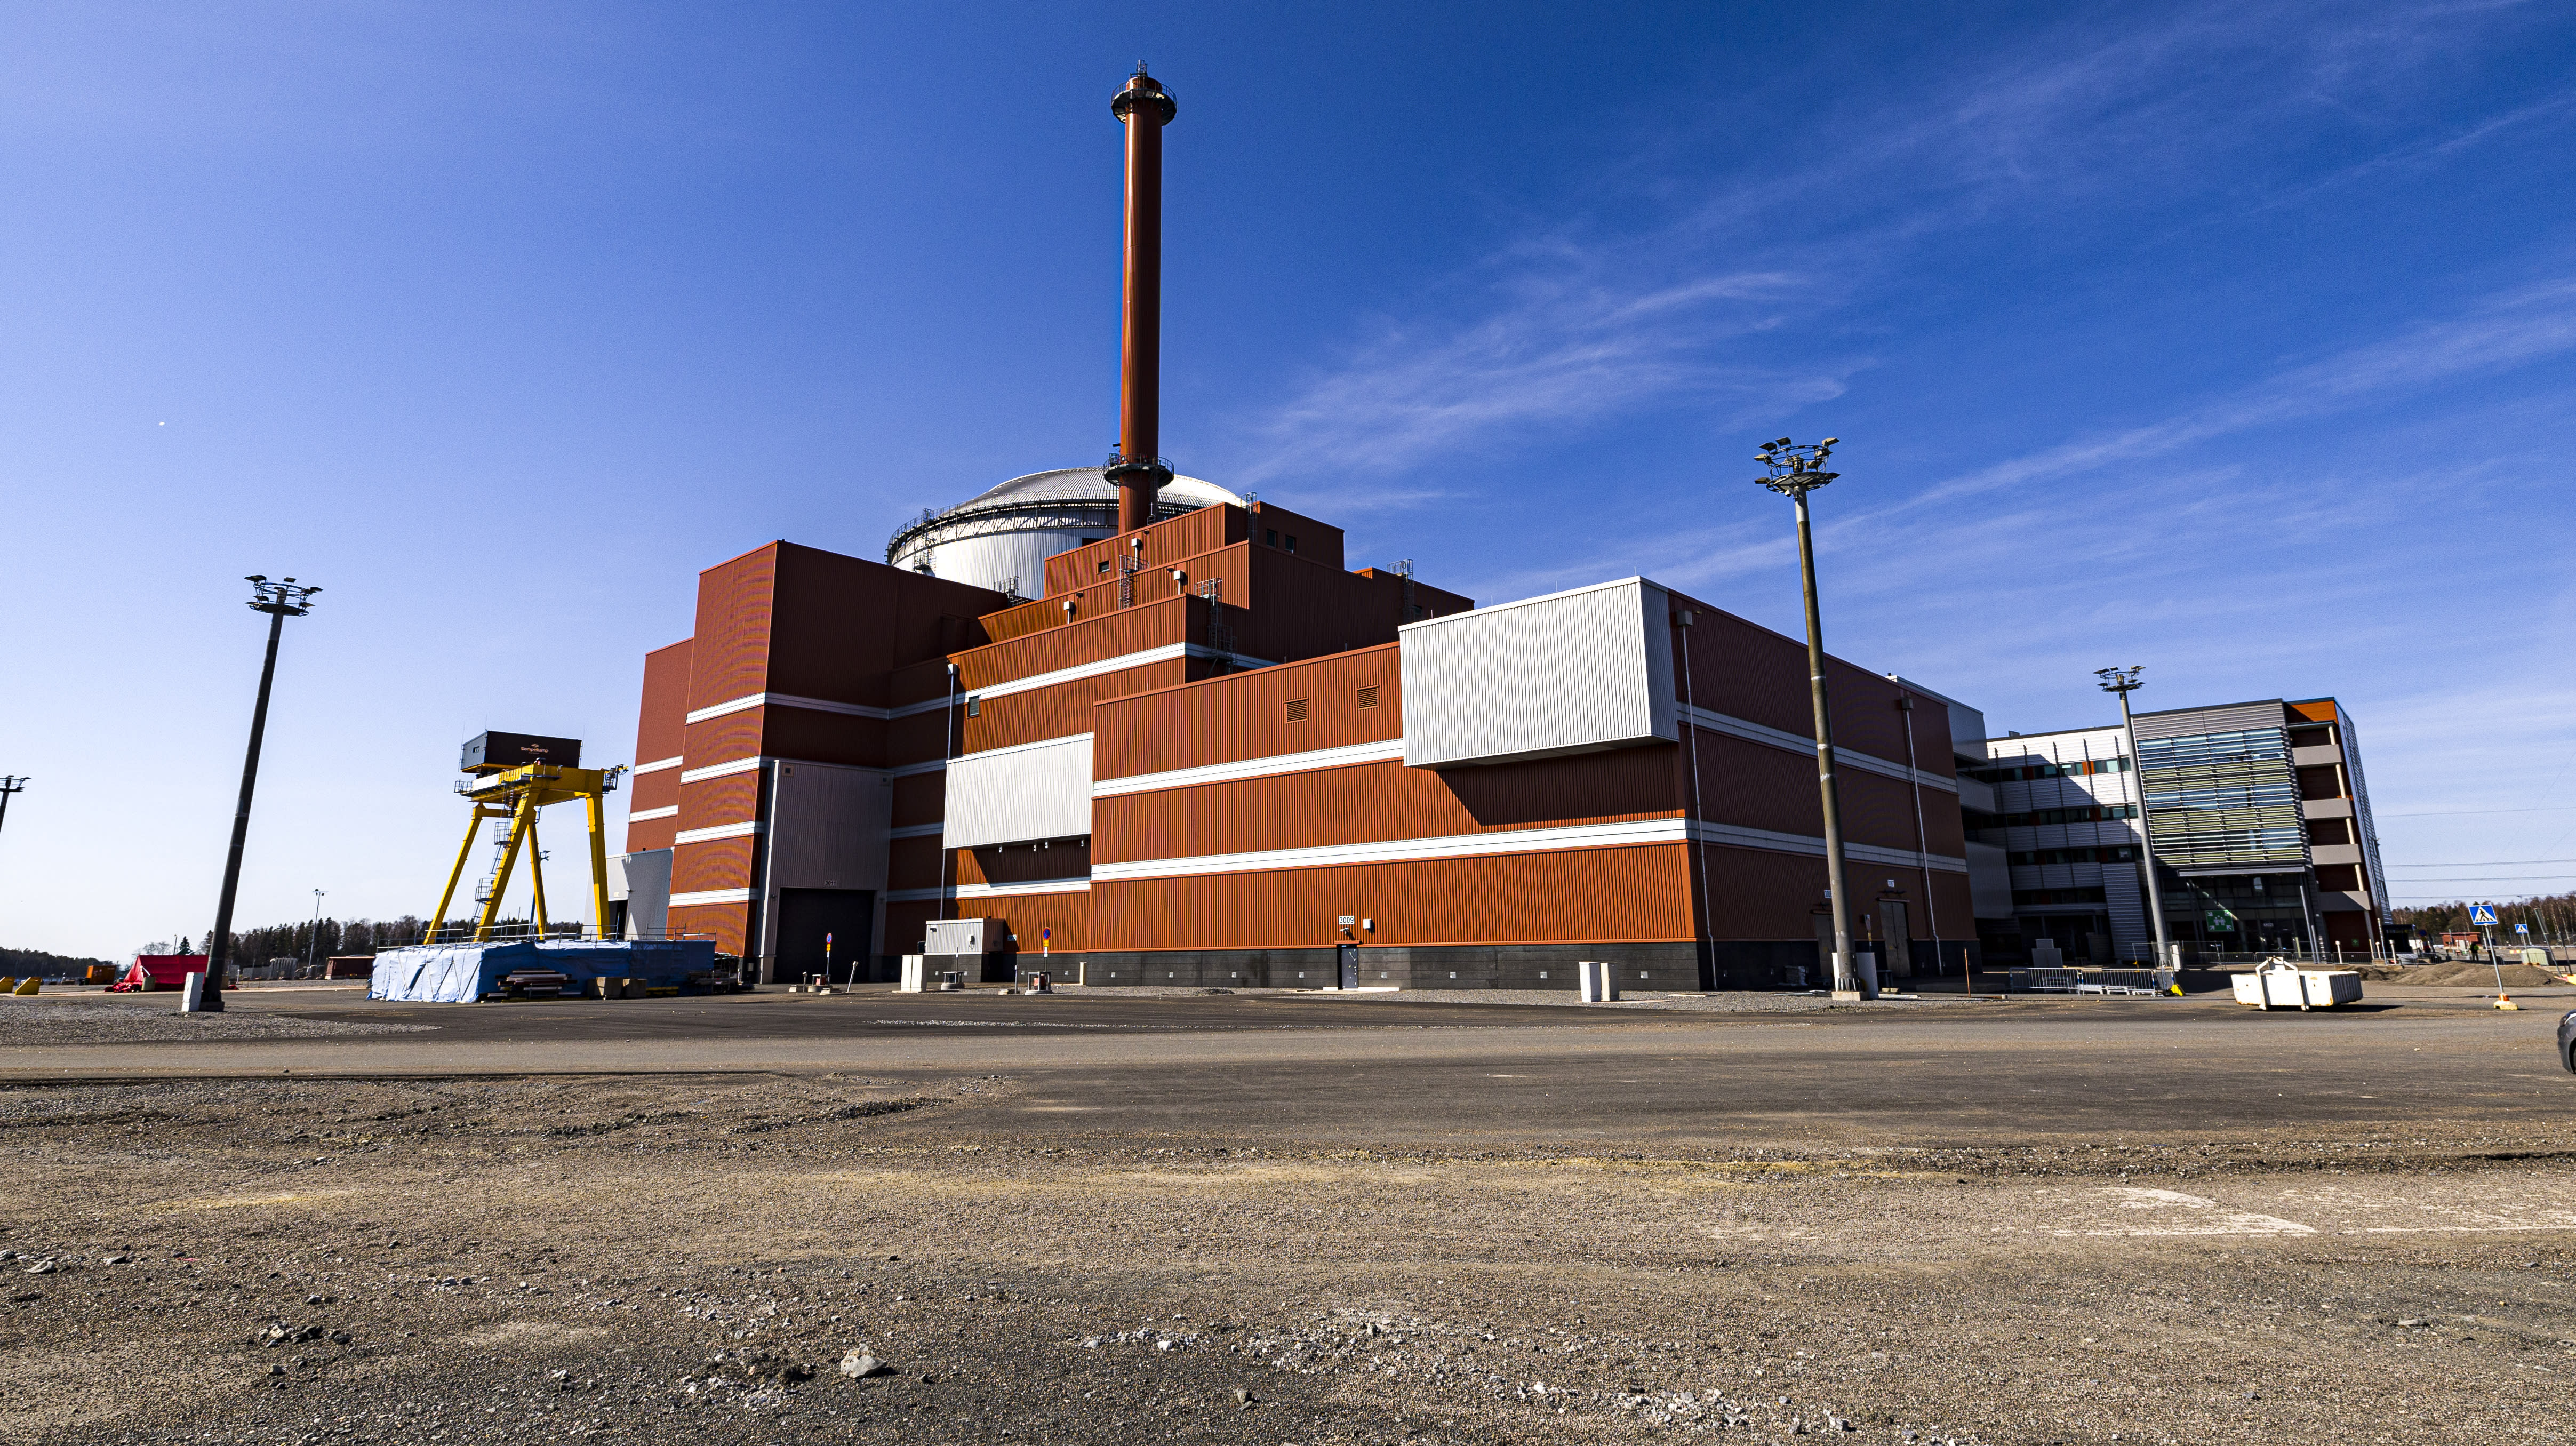 전기료가 너무 싸기 때문에 핀란드의 최신 원자력 발전소 생산이 제한되었습니다.